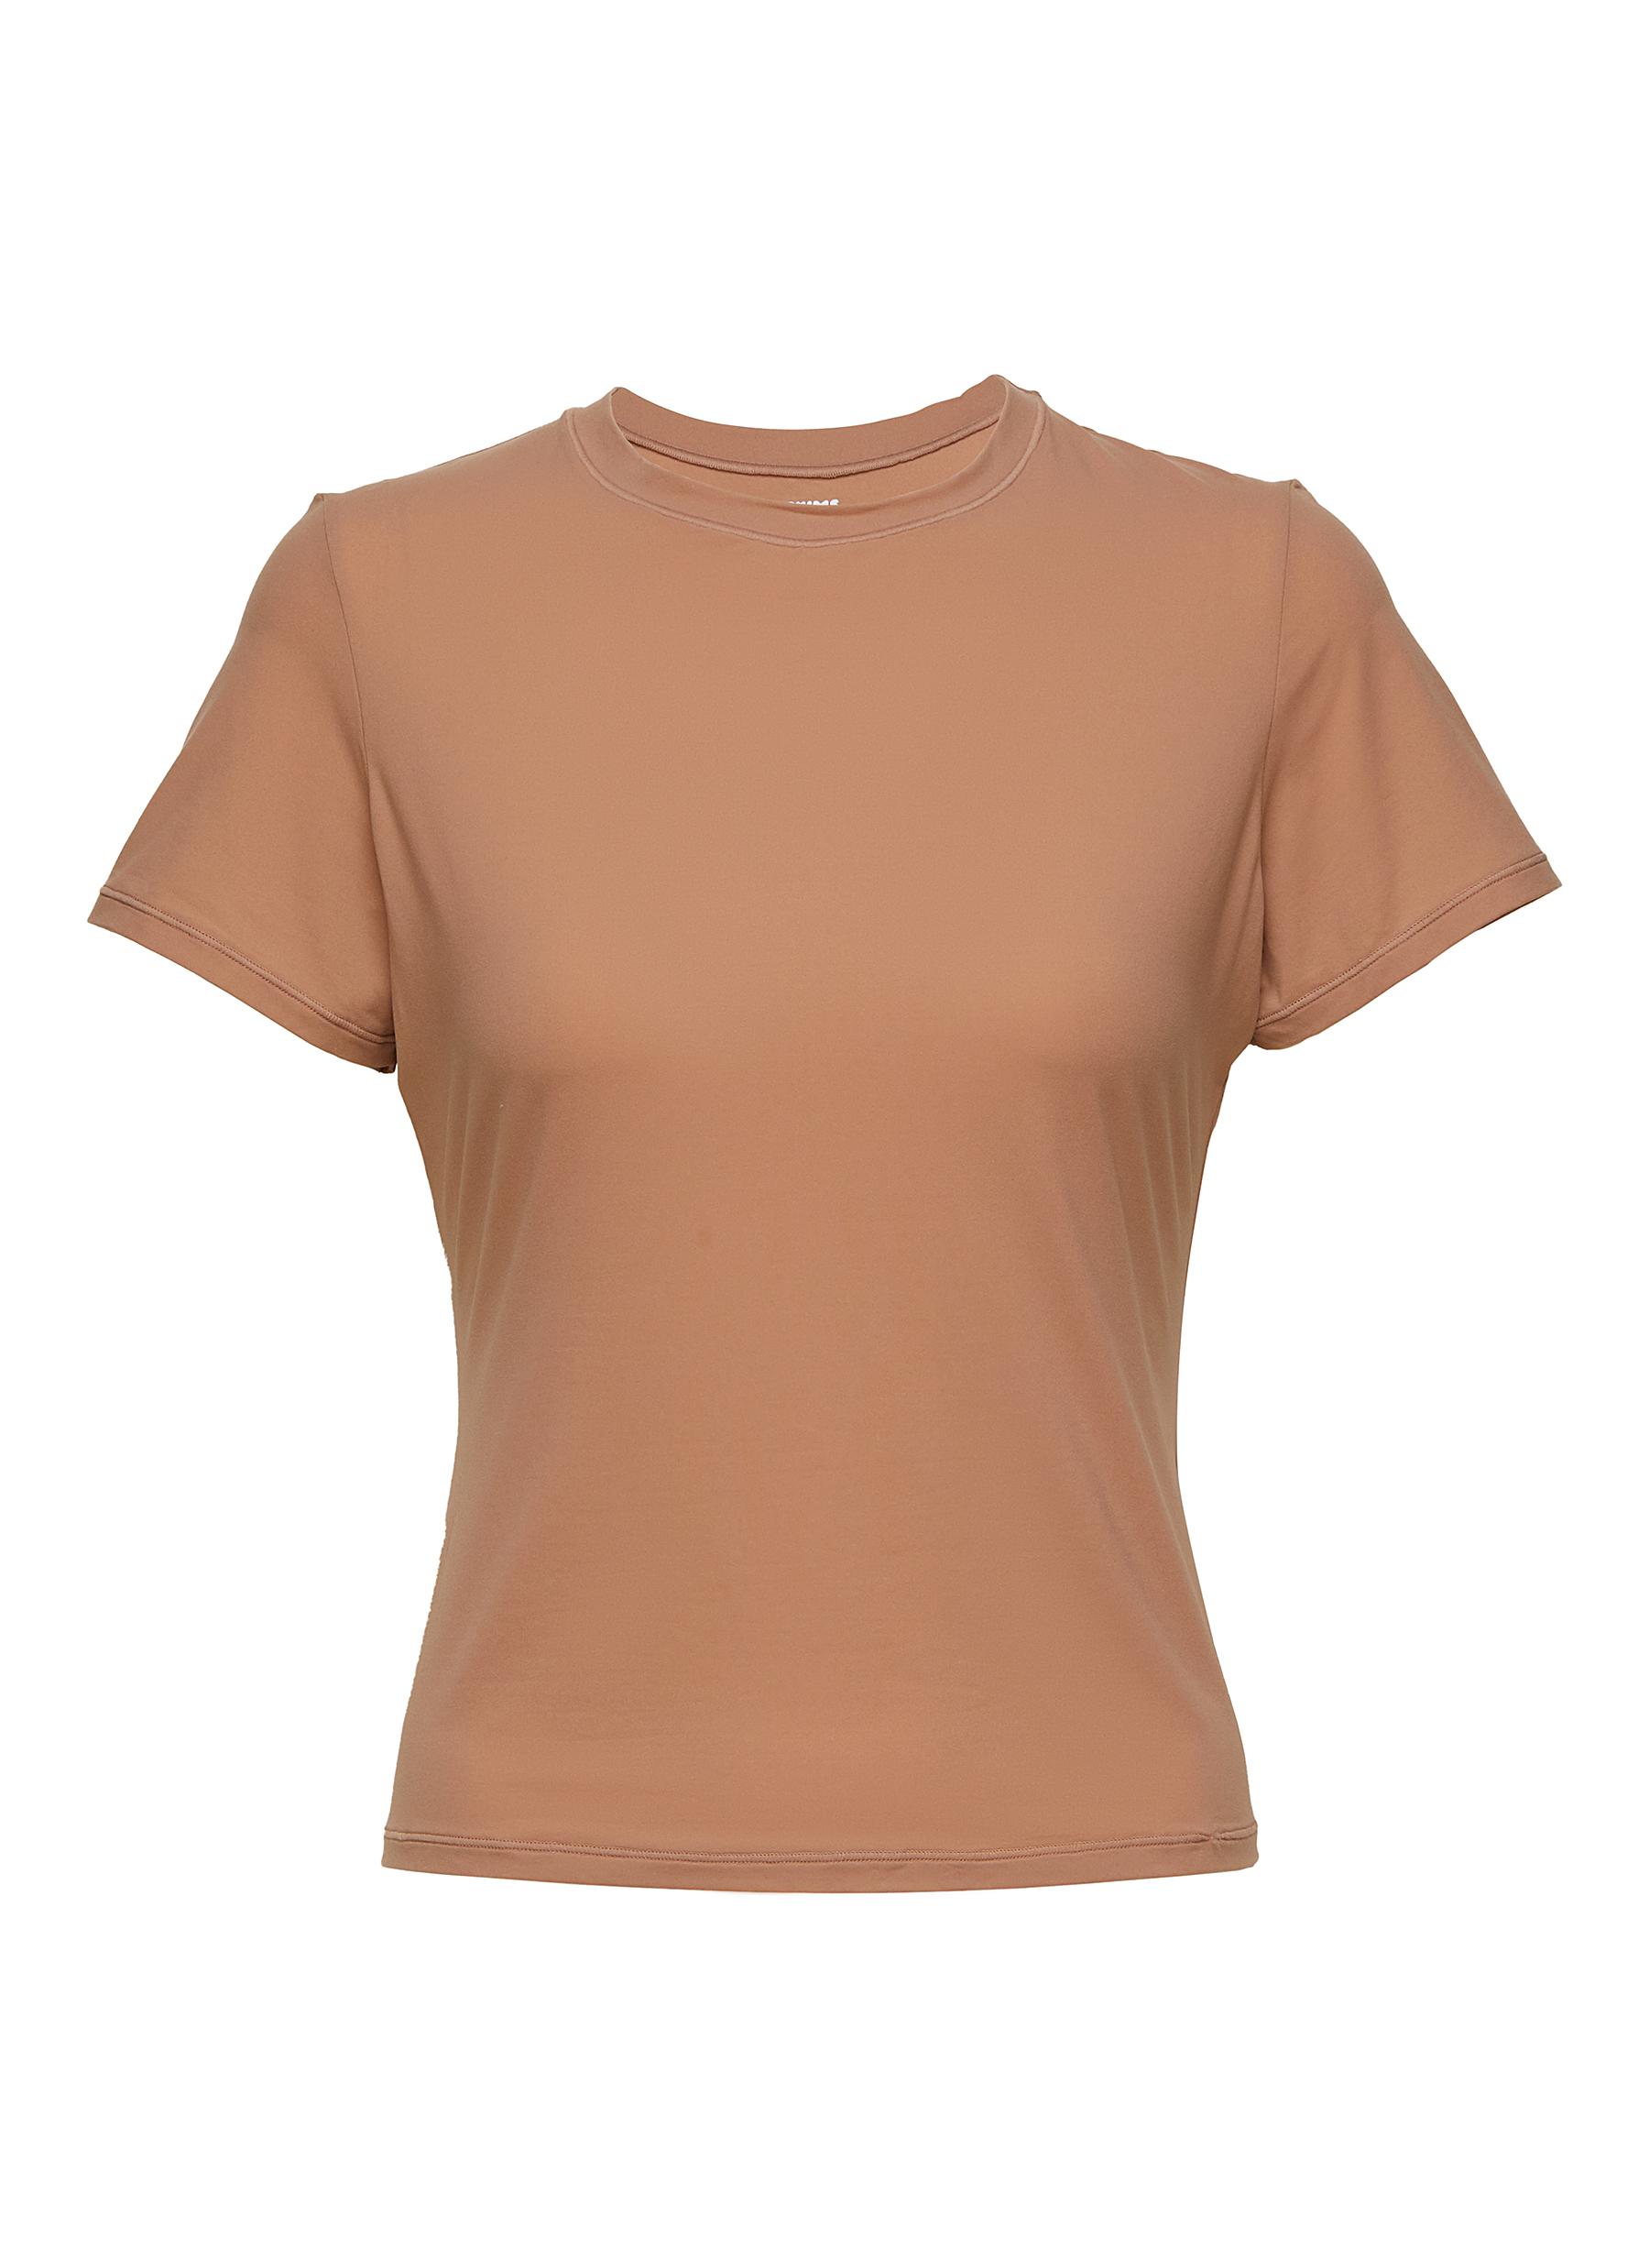 SKIMS Cotton Jersey T-Shirt Underwire Bra Chocolate 32A